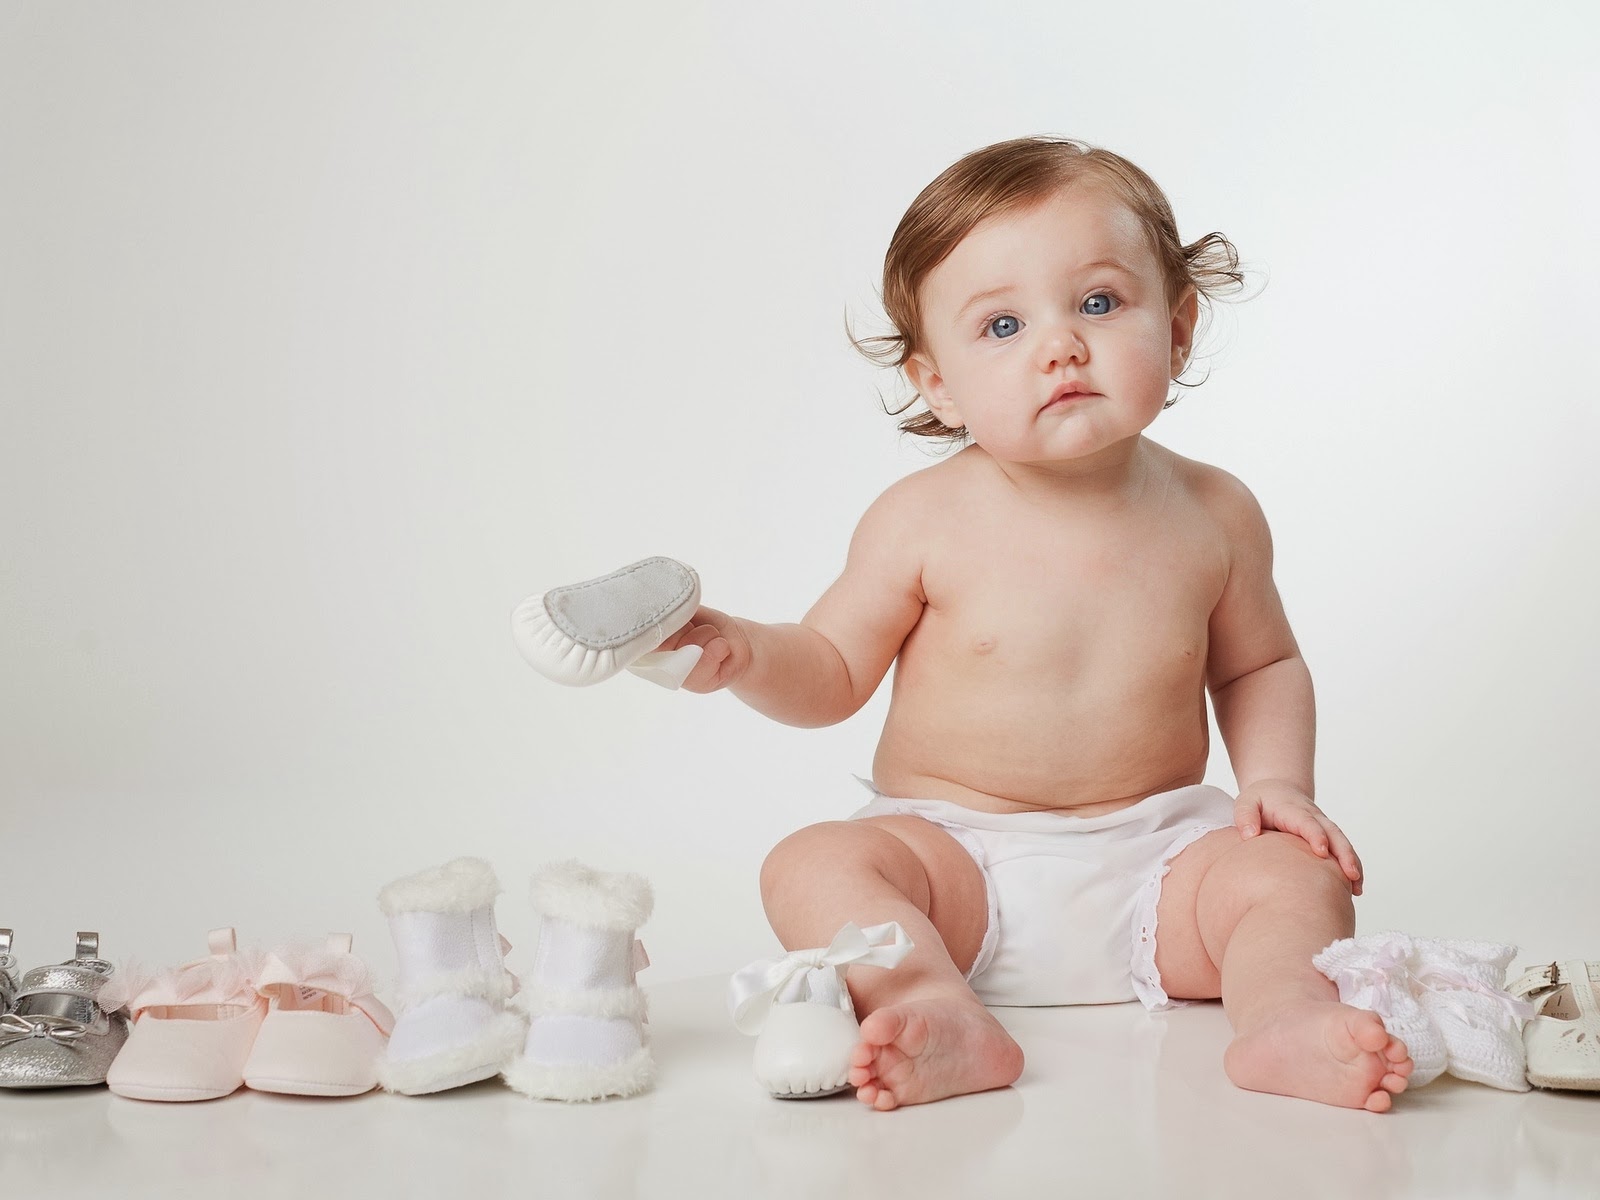 Cuál calzado ideal para los bebés los niños? - Plantillas Coimbra